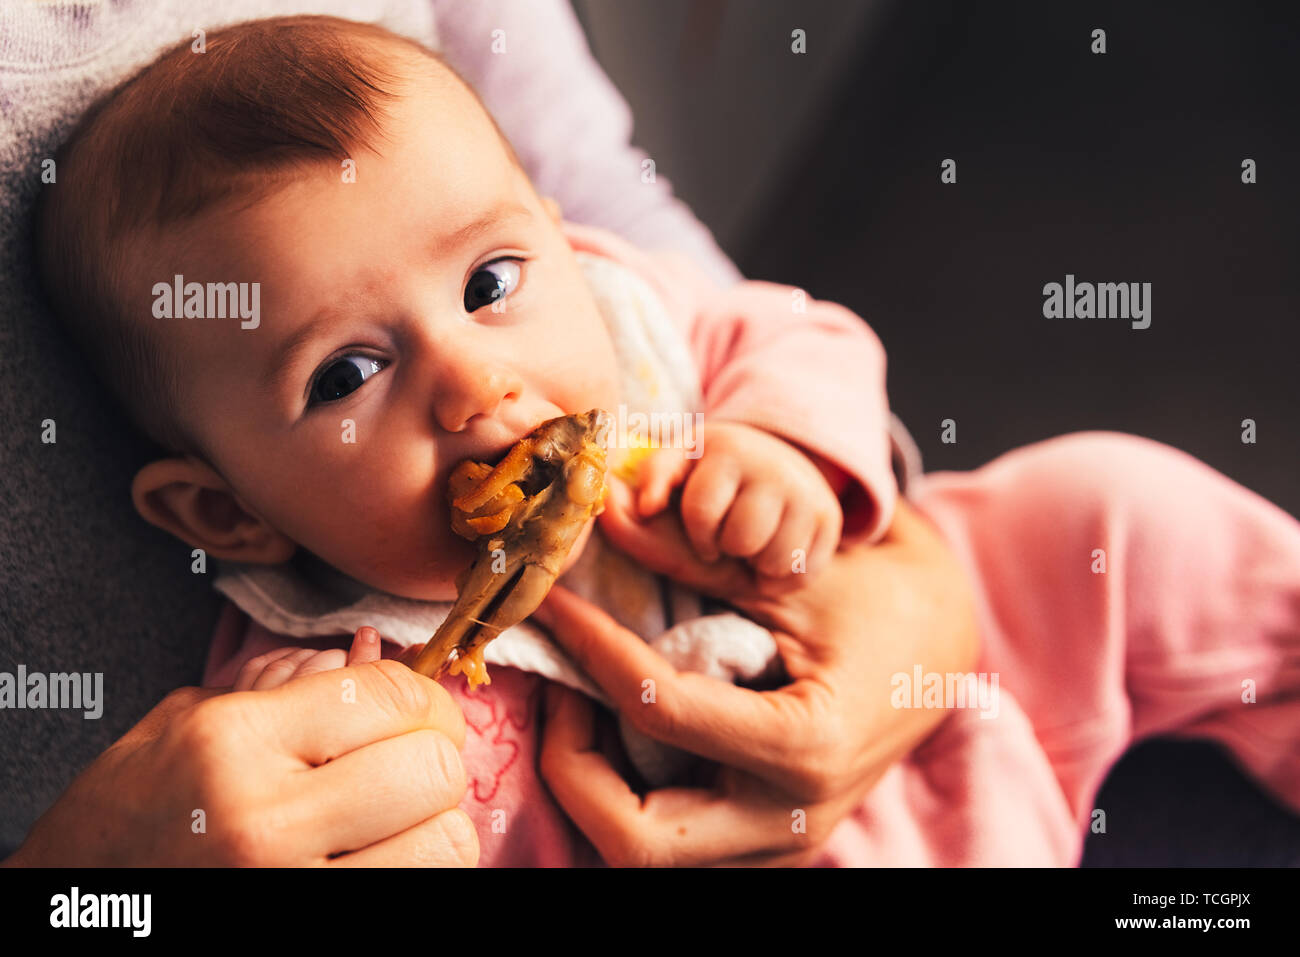 5 Monate altes Baby essen ein hühnerbein mit dem Baby led weaning BLW-Methode  Stockfotografie - Alamy